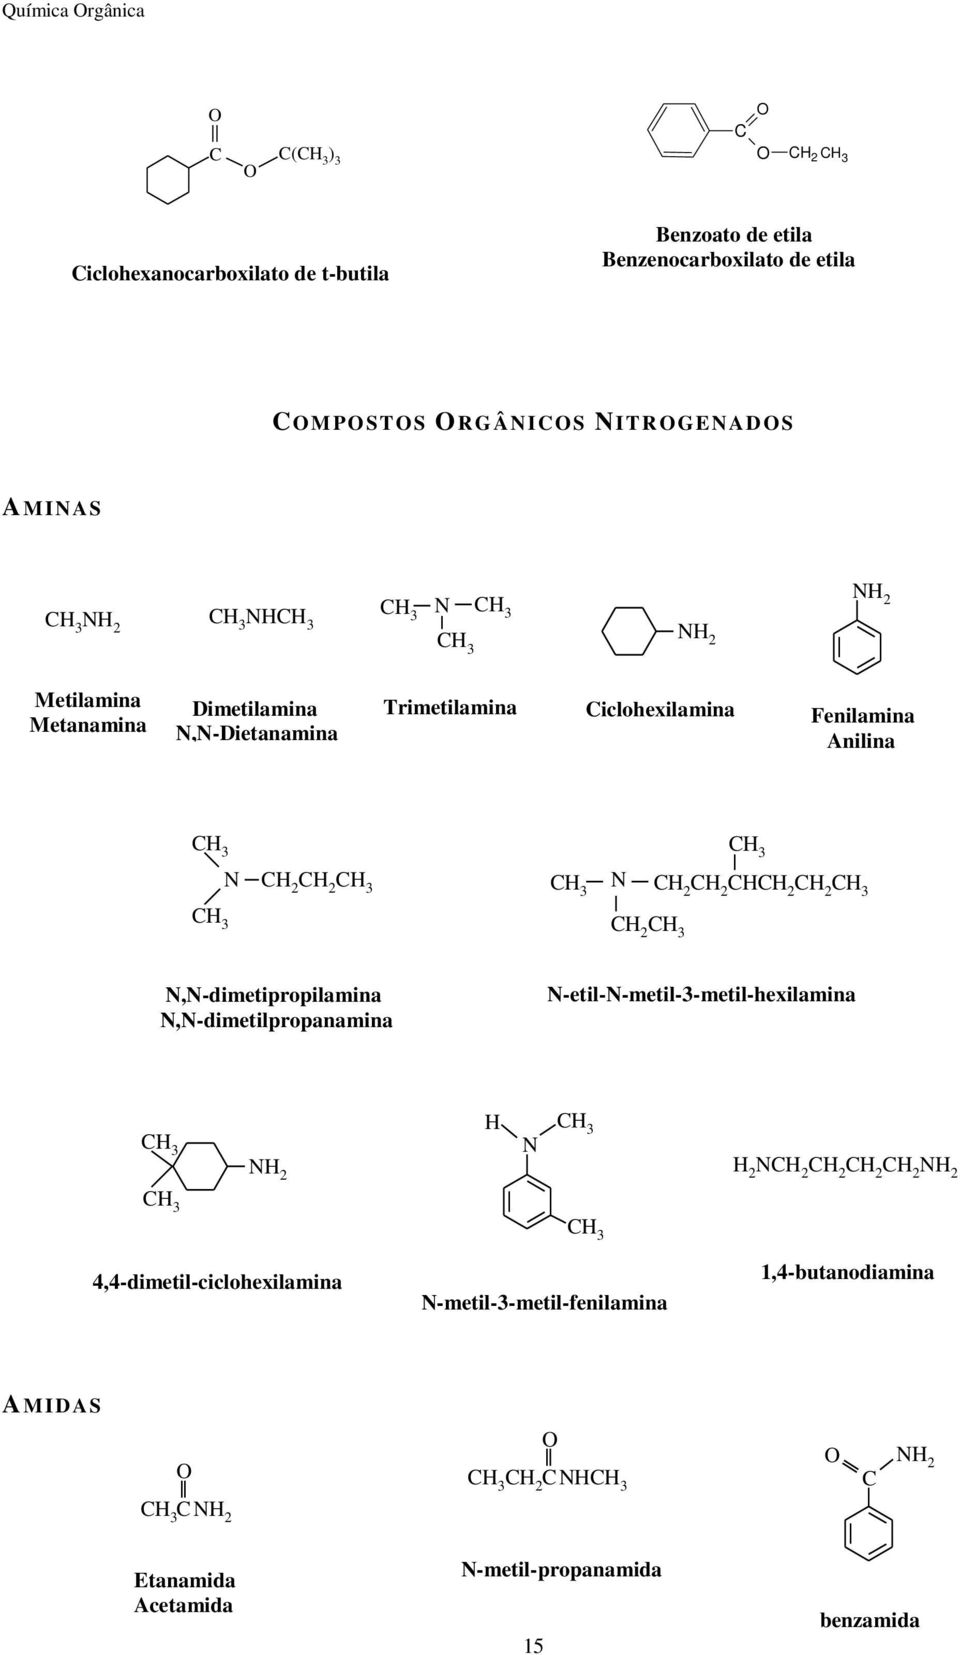 Fenilamina Anilina N N N,N-dimetipropilamina N,N-dimetilpropanamina N-etil-N-metil-3-metil-hexilamina N N N N